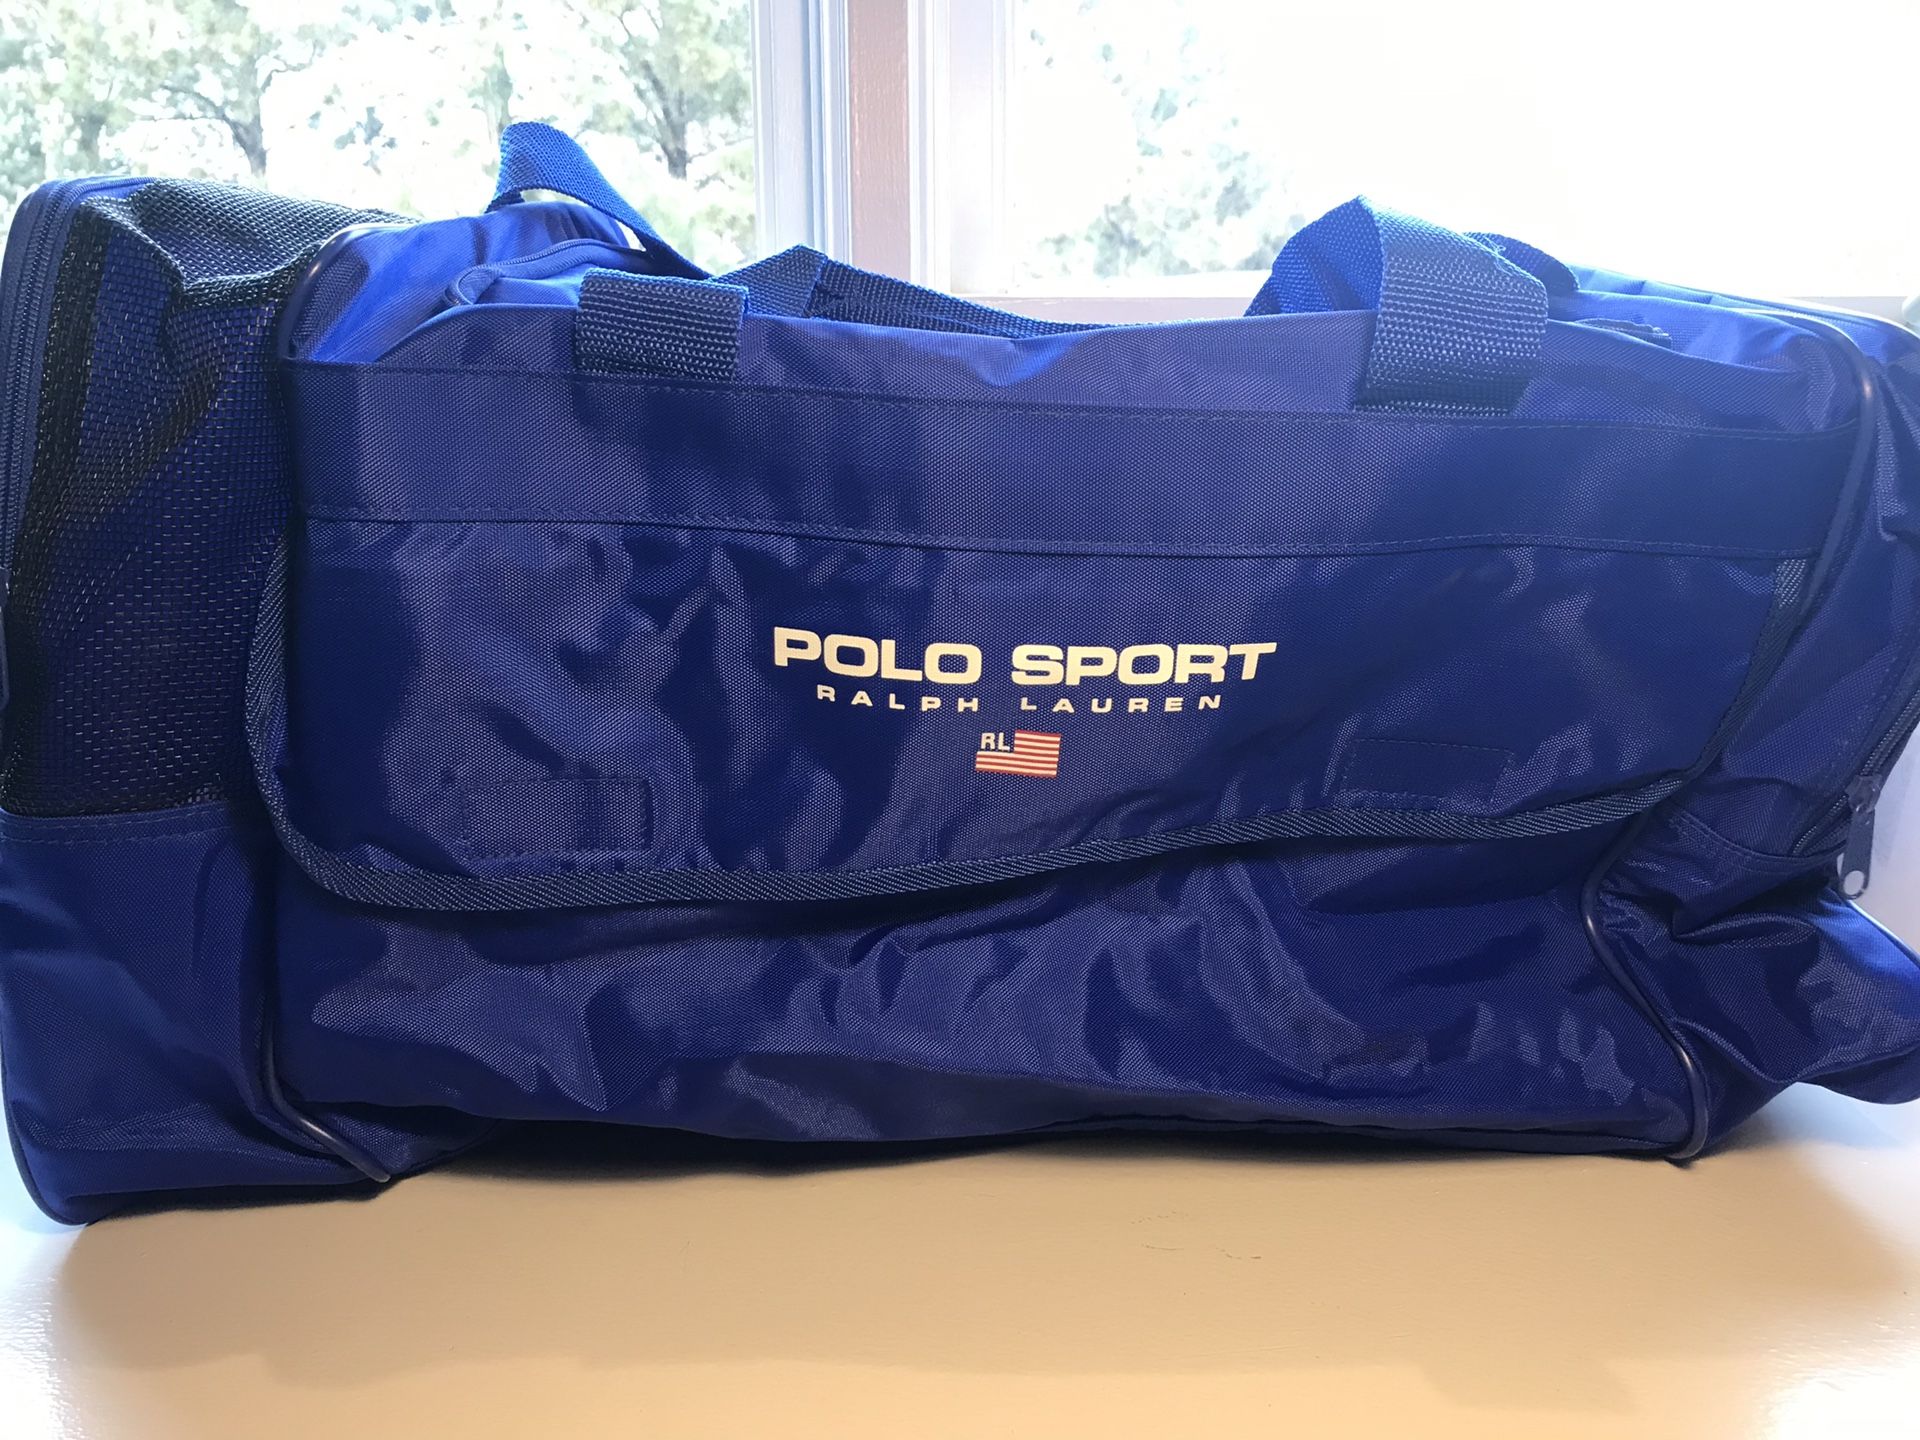 Polo sport Ralph Lauren vintage 90’s gym workout bag blue duffle